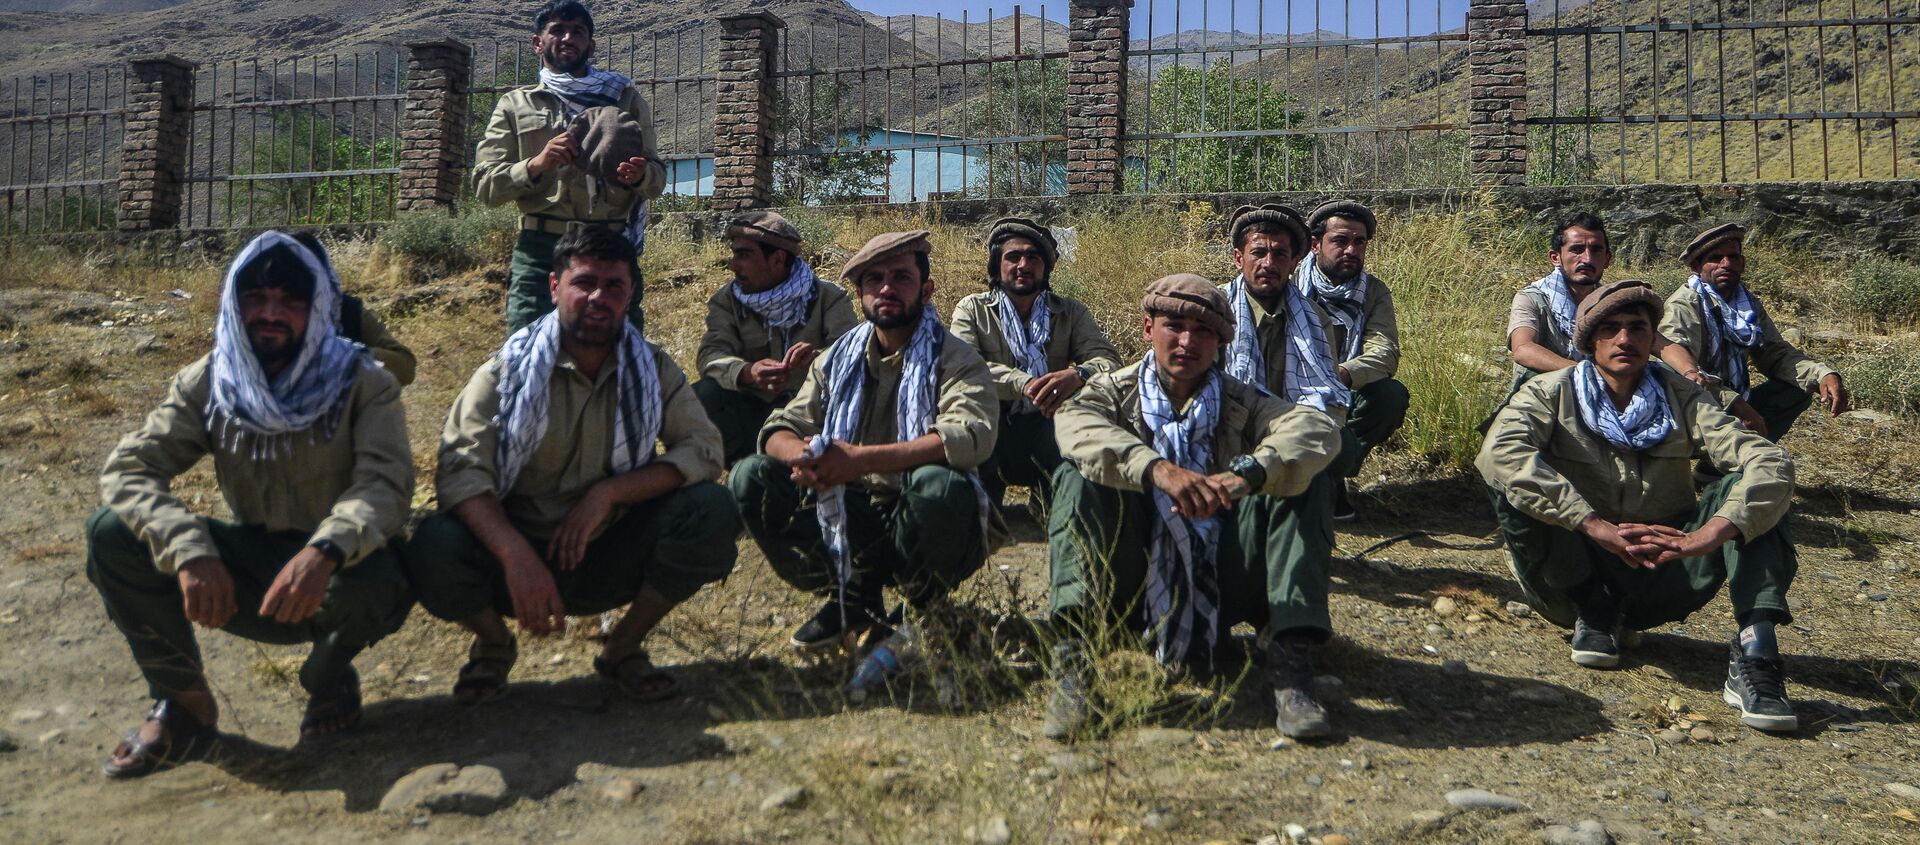 Молодые люди, которых пришли на службу в Силы безопасности Афганистана, сидят на дороге в провинции Панджшер. 15 августа 2021 года - Sputnik Кыргызстан, 1920, 16.08.2021